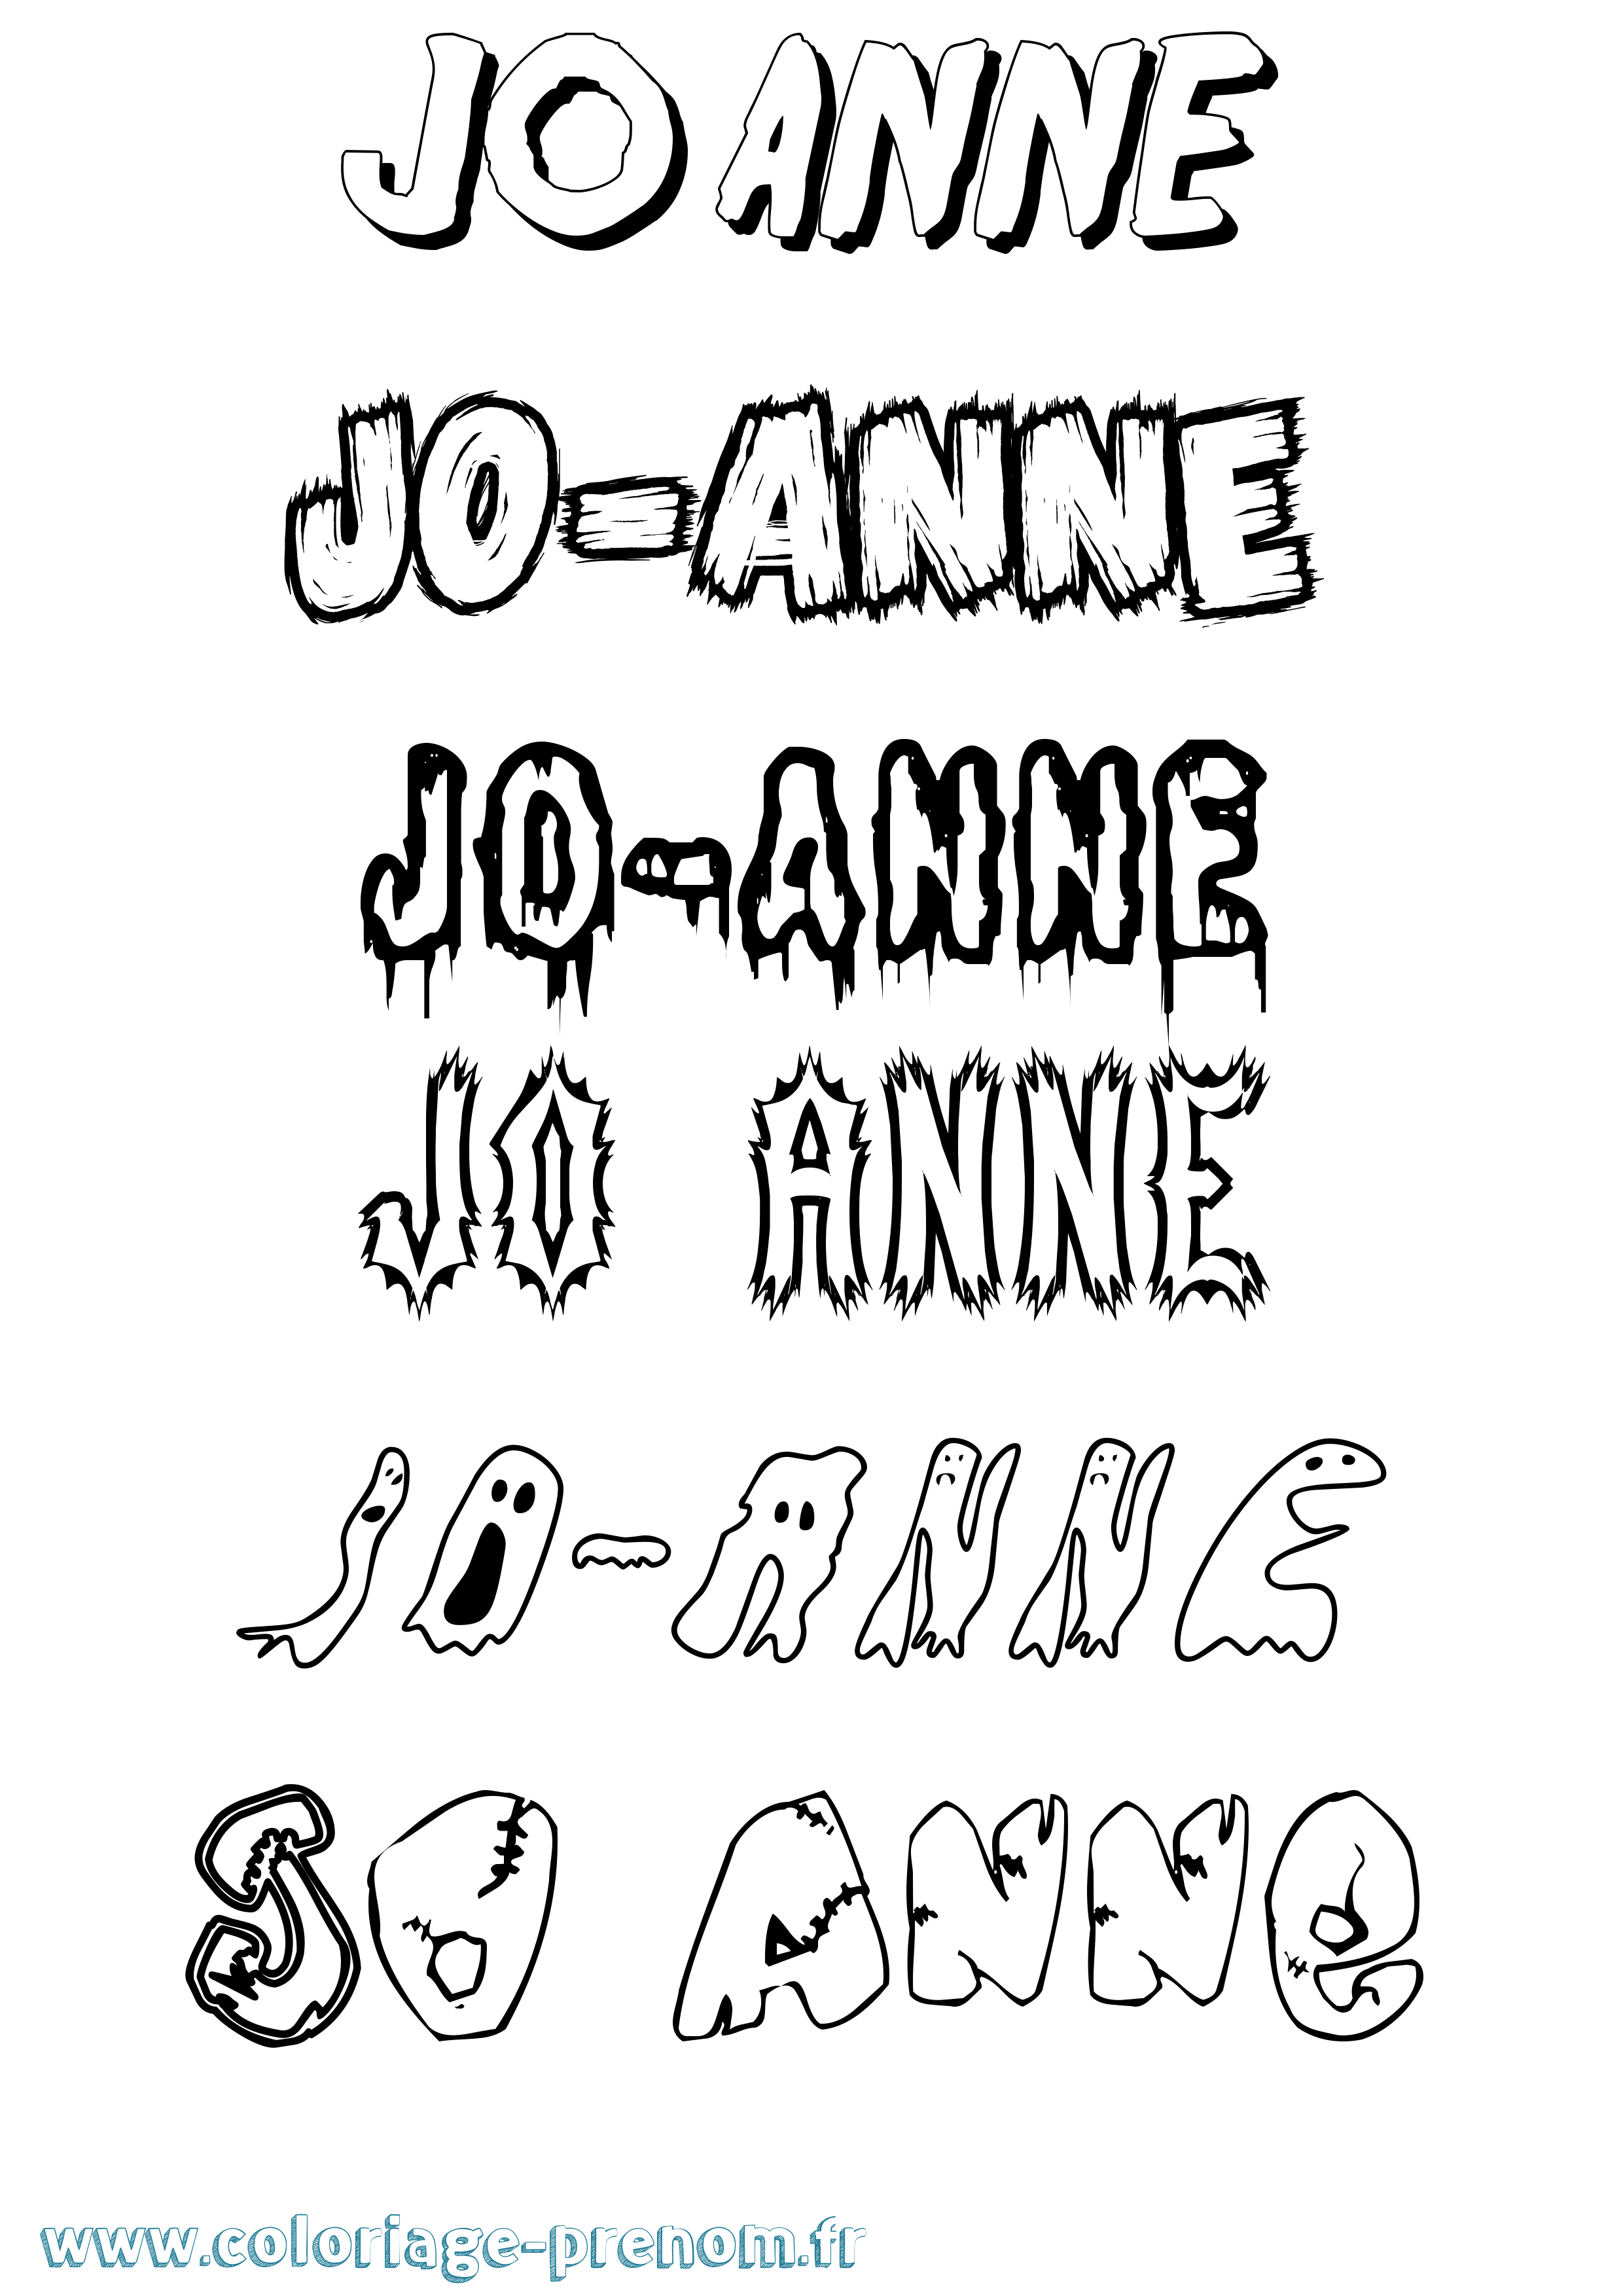 Coloriage prénom Jo-Anne Frisson